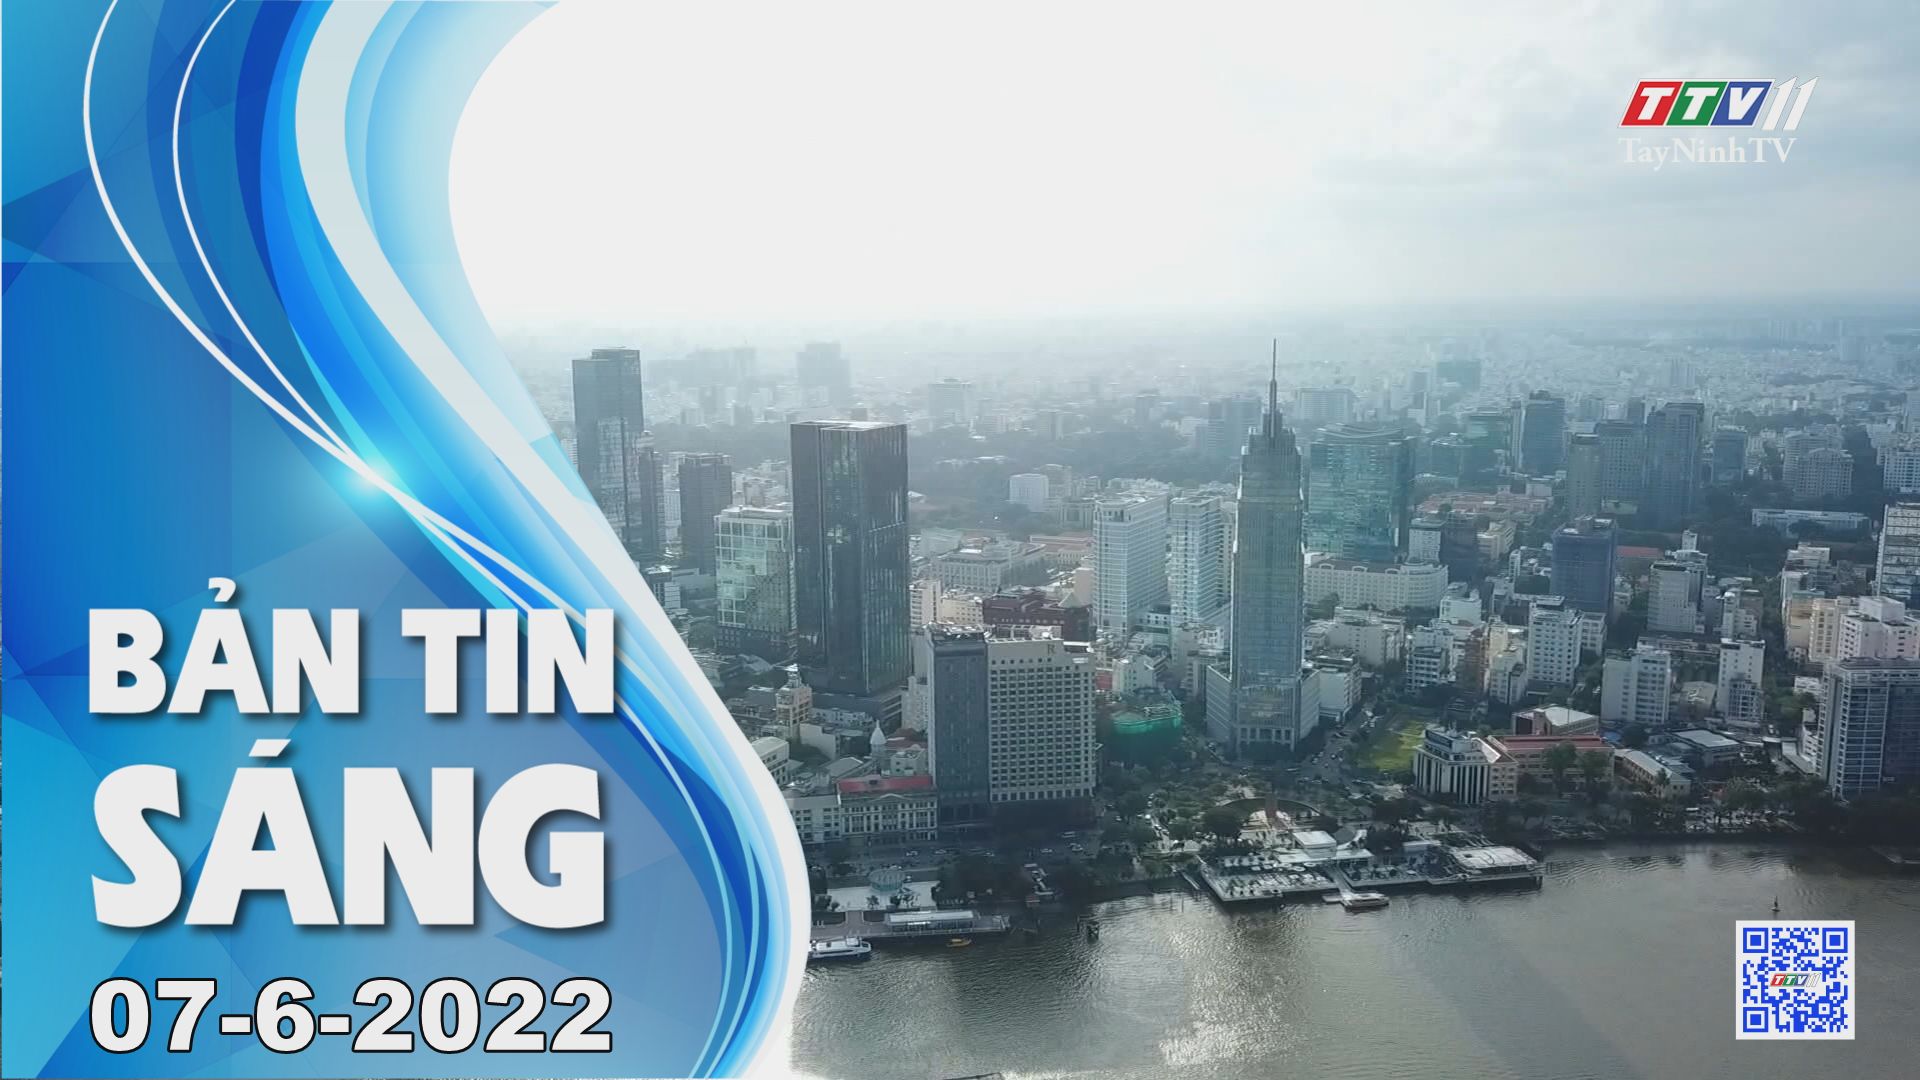 Bản tin sáng 07-6-2022 | Tin tức hôm nay | TayNinhTV